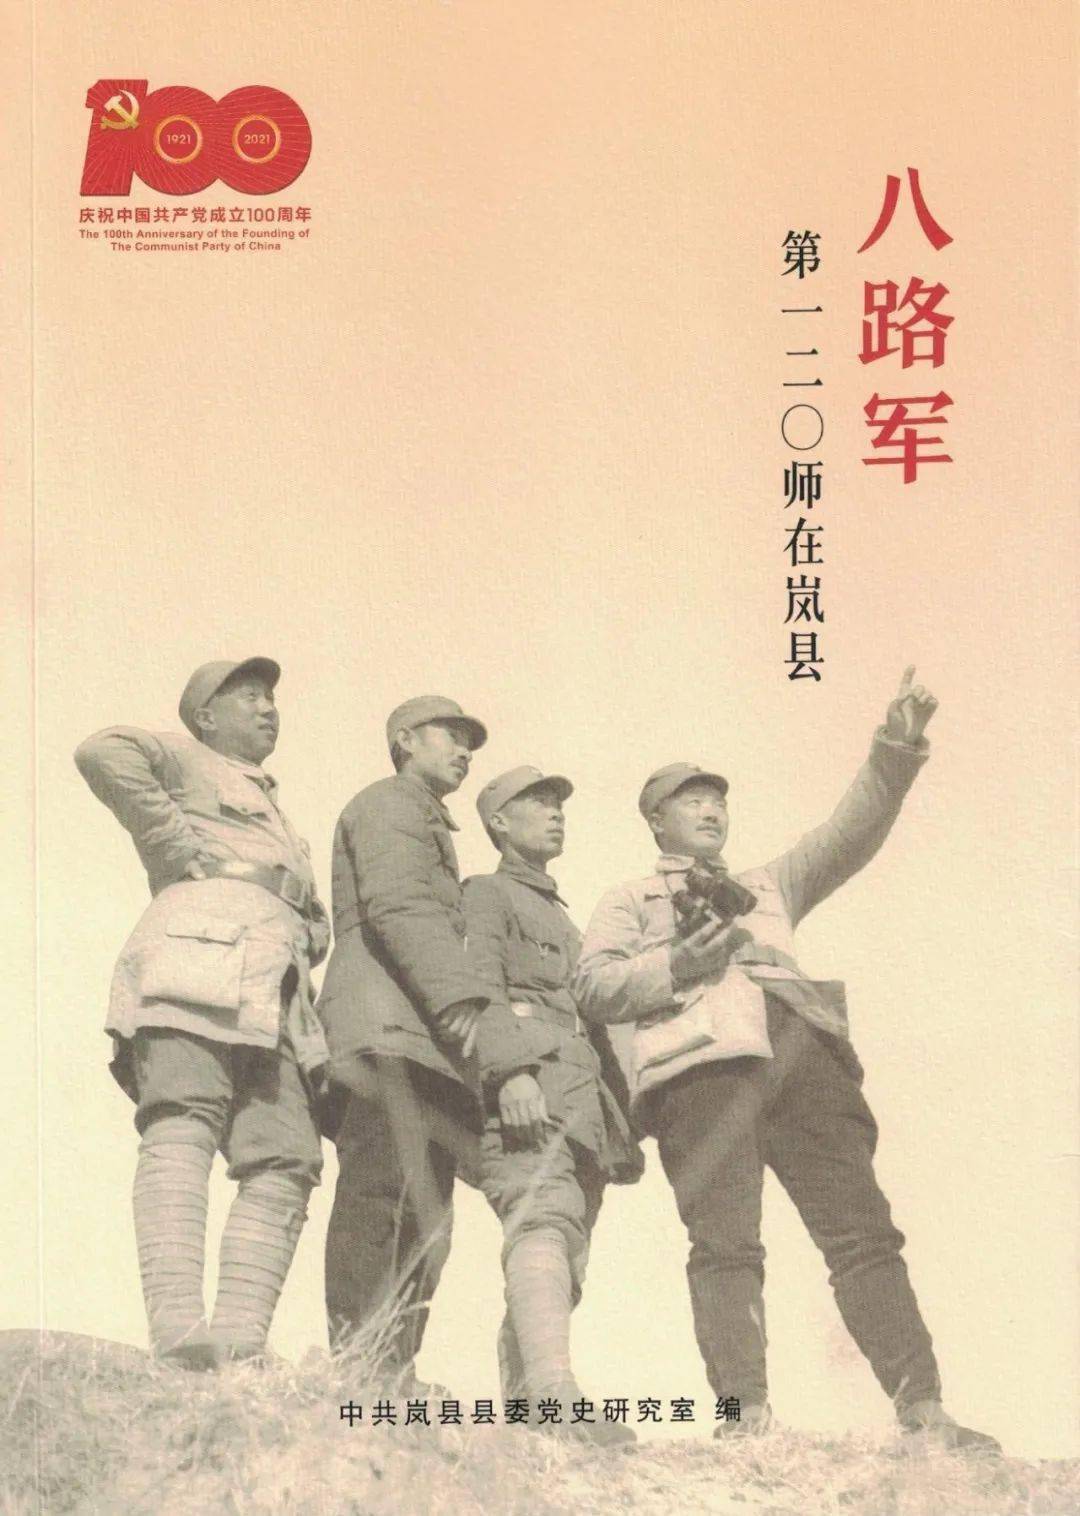 红色记忆】《八路军第一二〇师在岚县》（ 十九）第120师派干部担任政治 